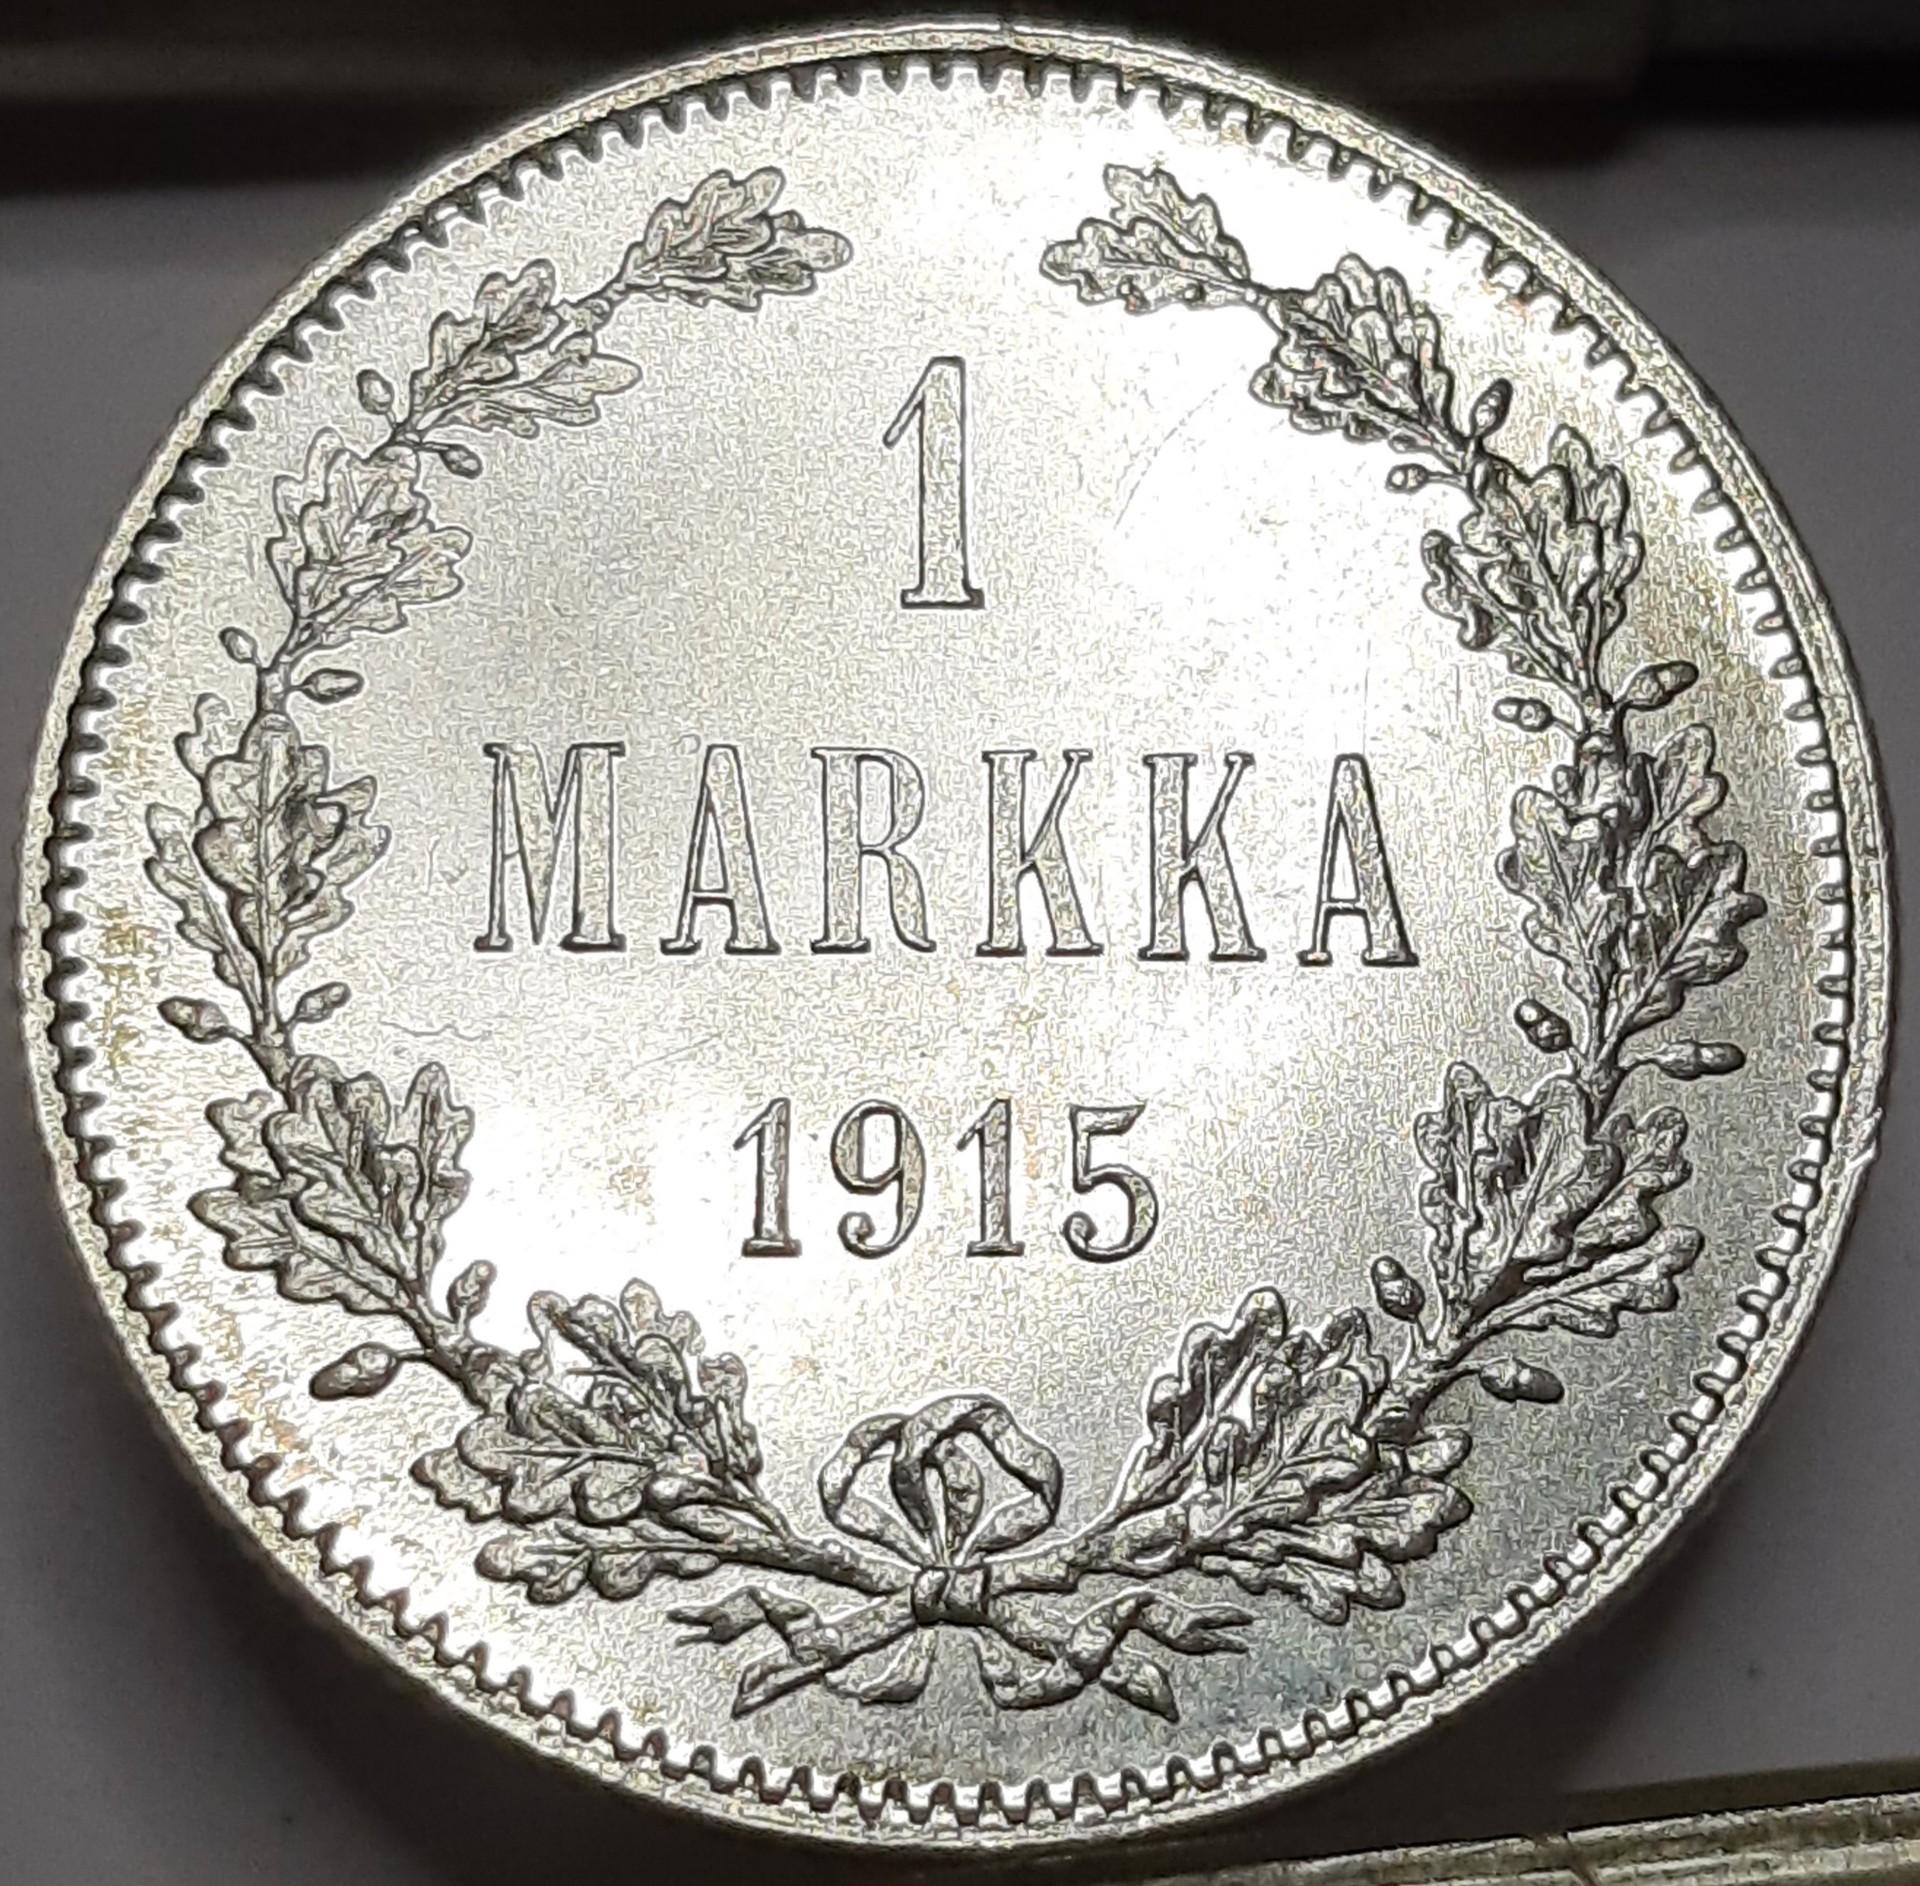 Suomija 1 Markė 1915 KM#3.2 (6623